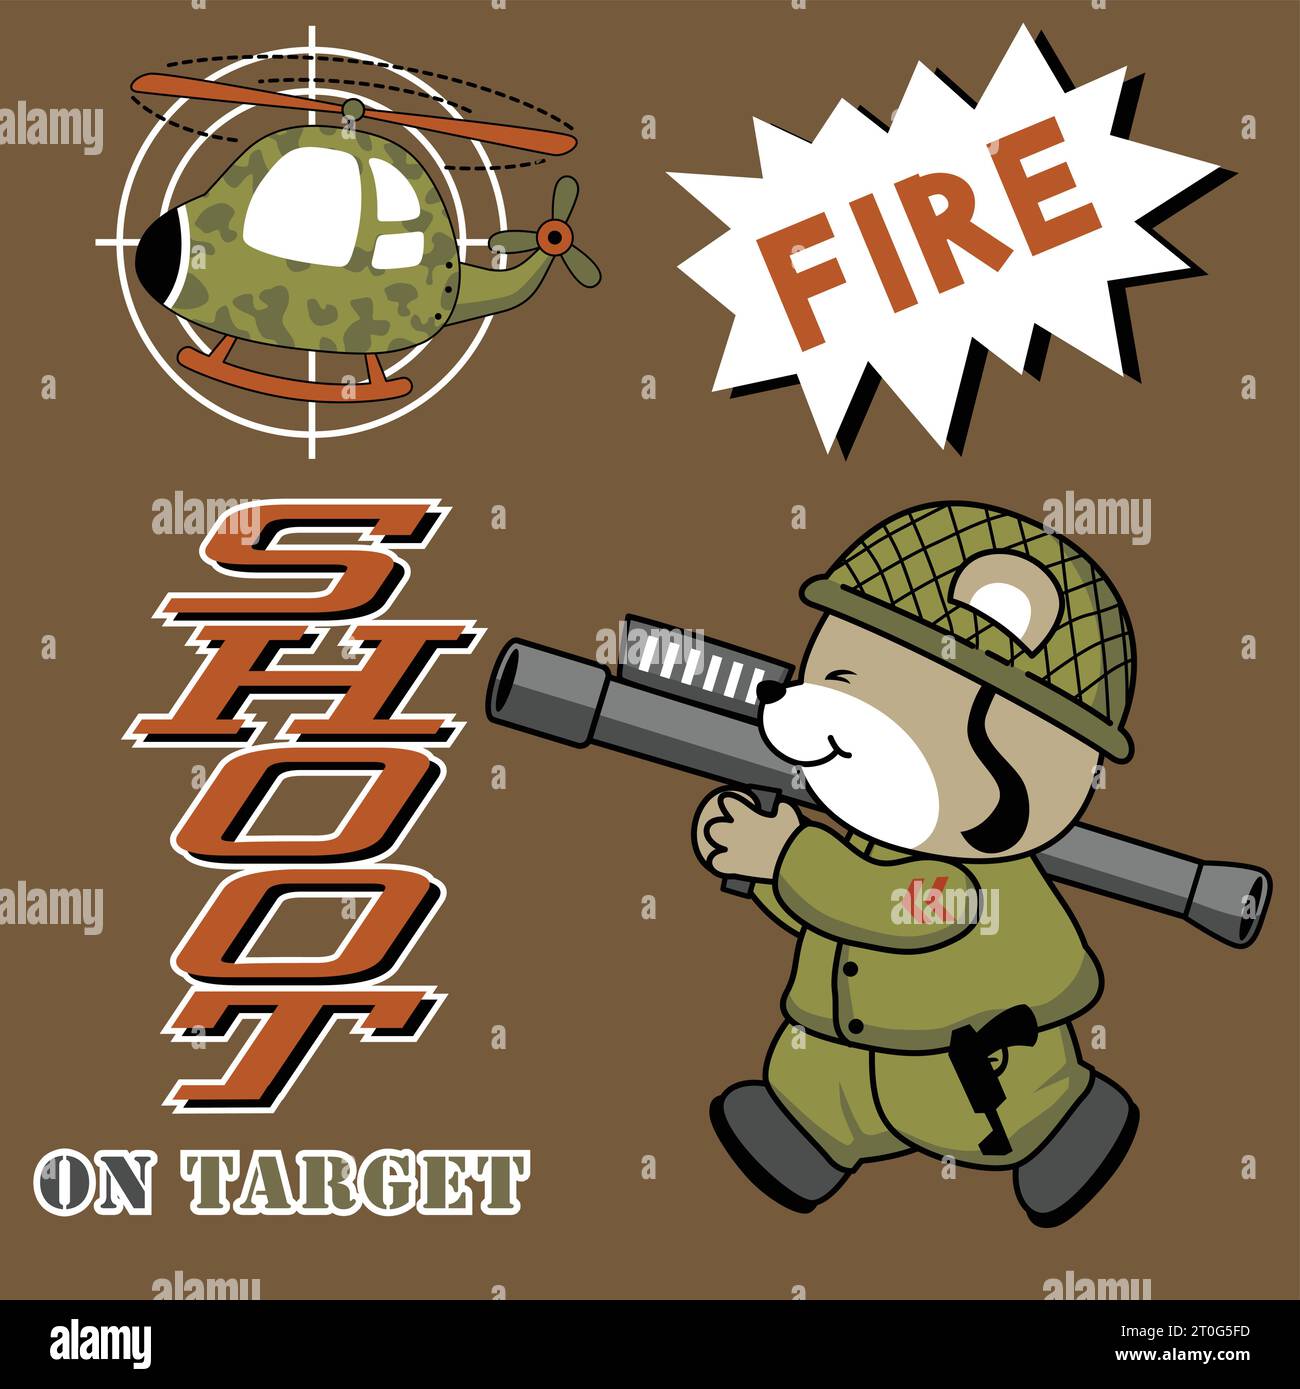 Divertido oso soldado disparar un helicóptero militar con bazooka, ilustración vectorial de dibujos animados Ilustración del Vector